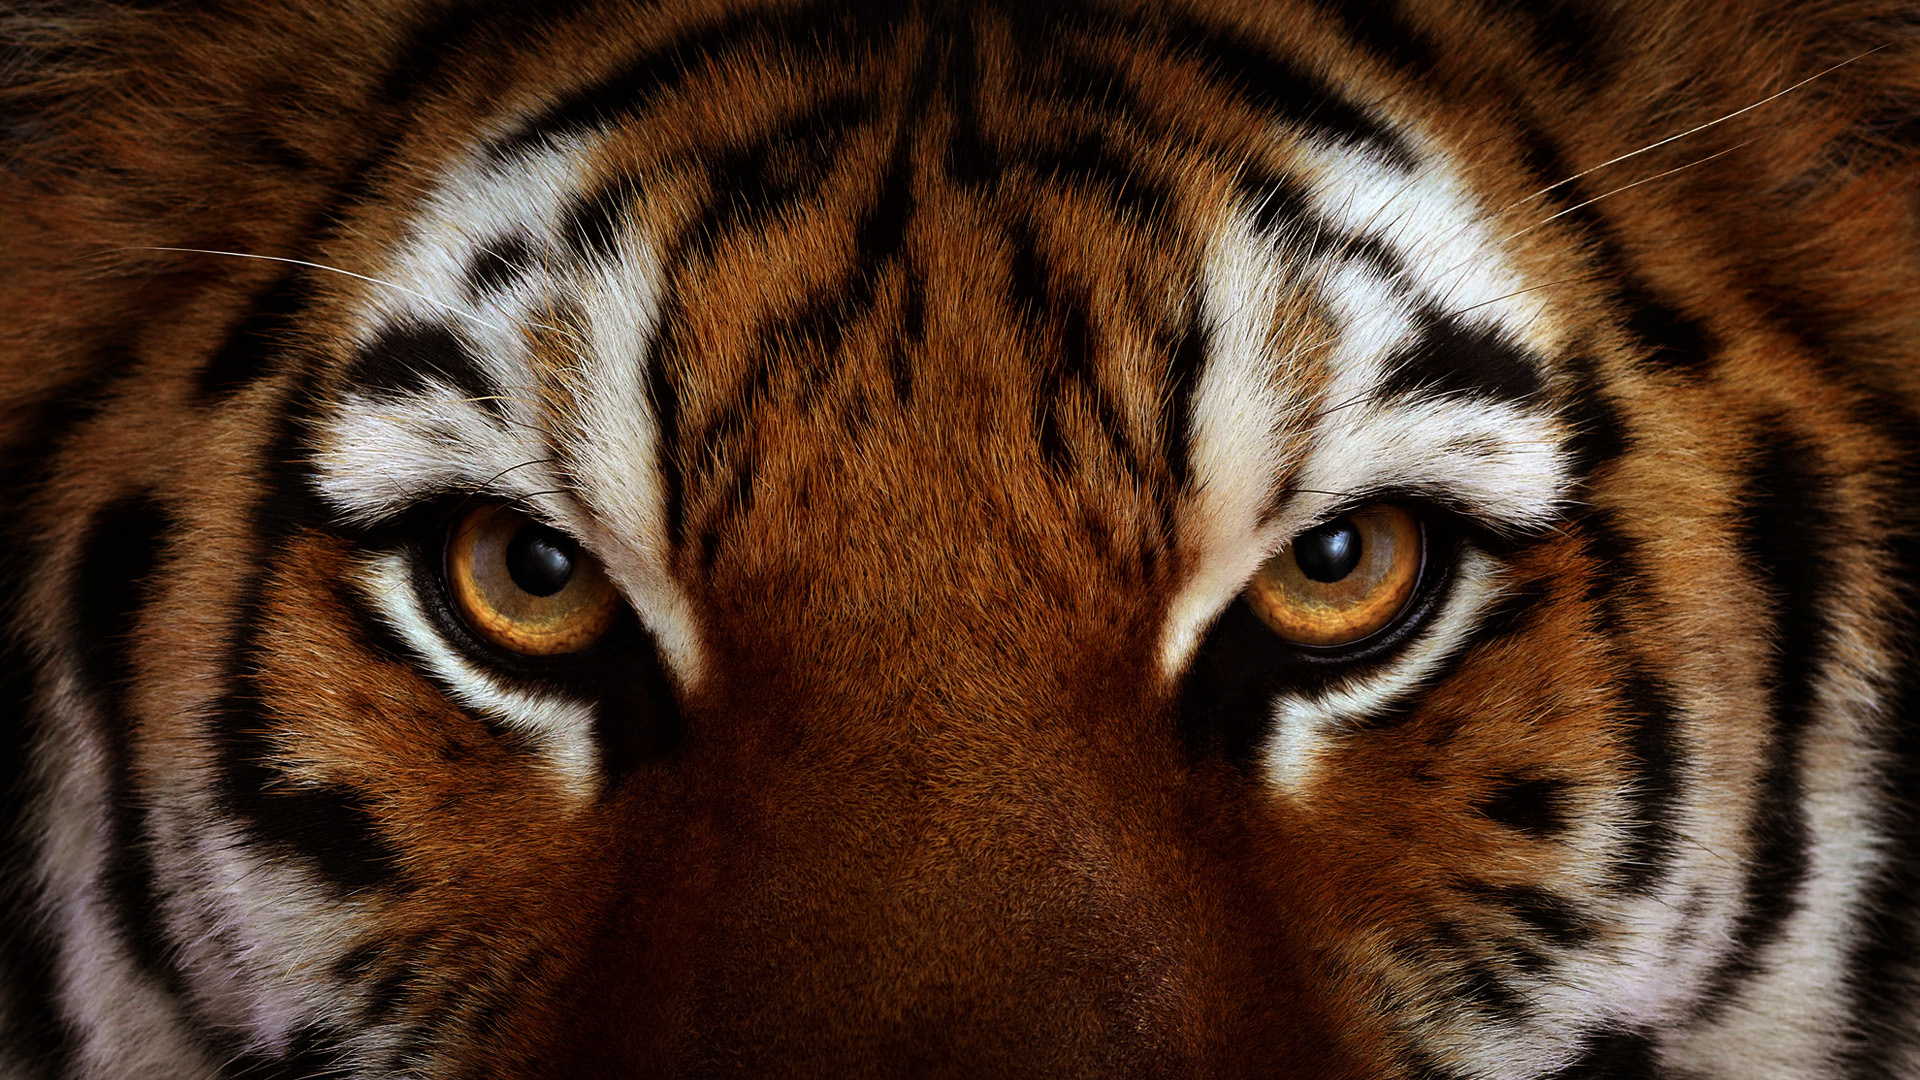 Tiger HD Wallpaper